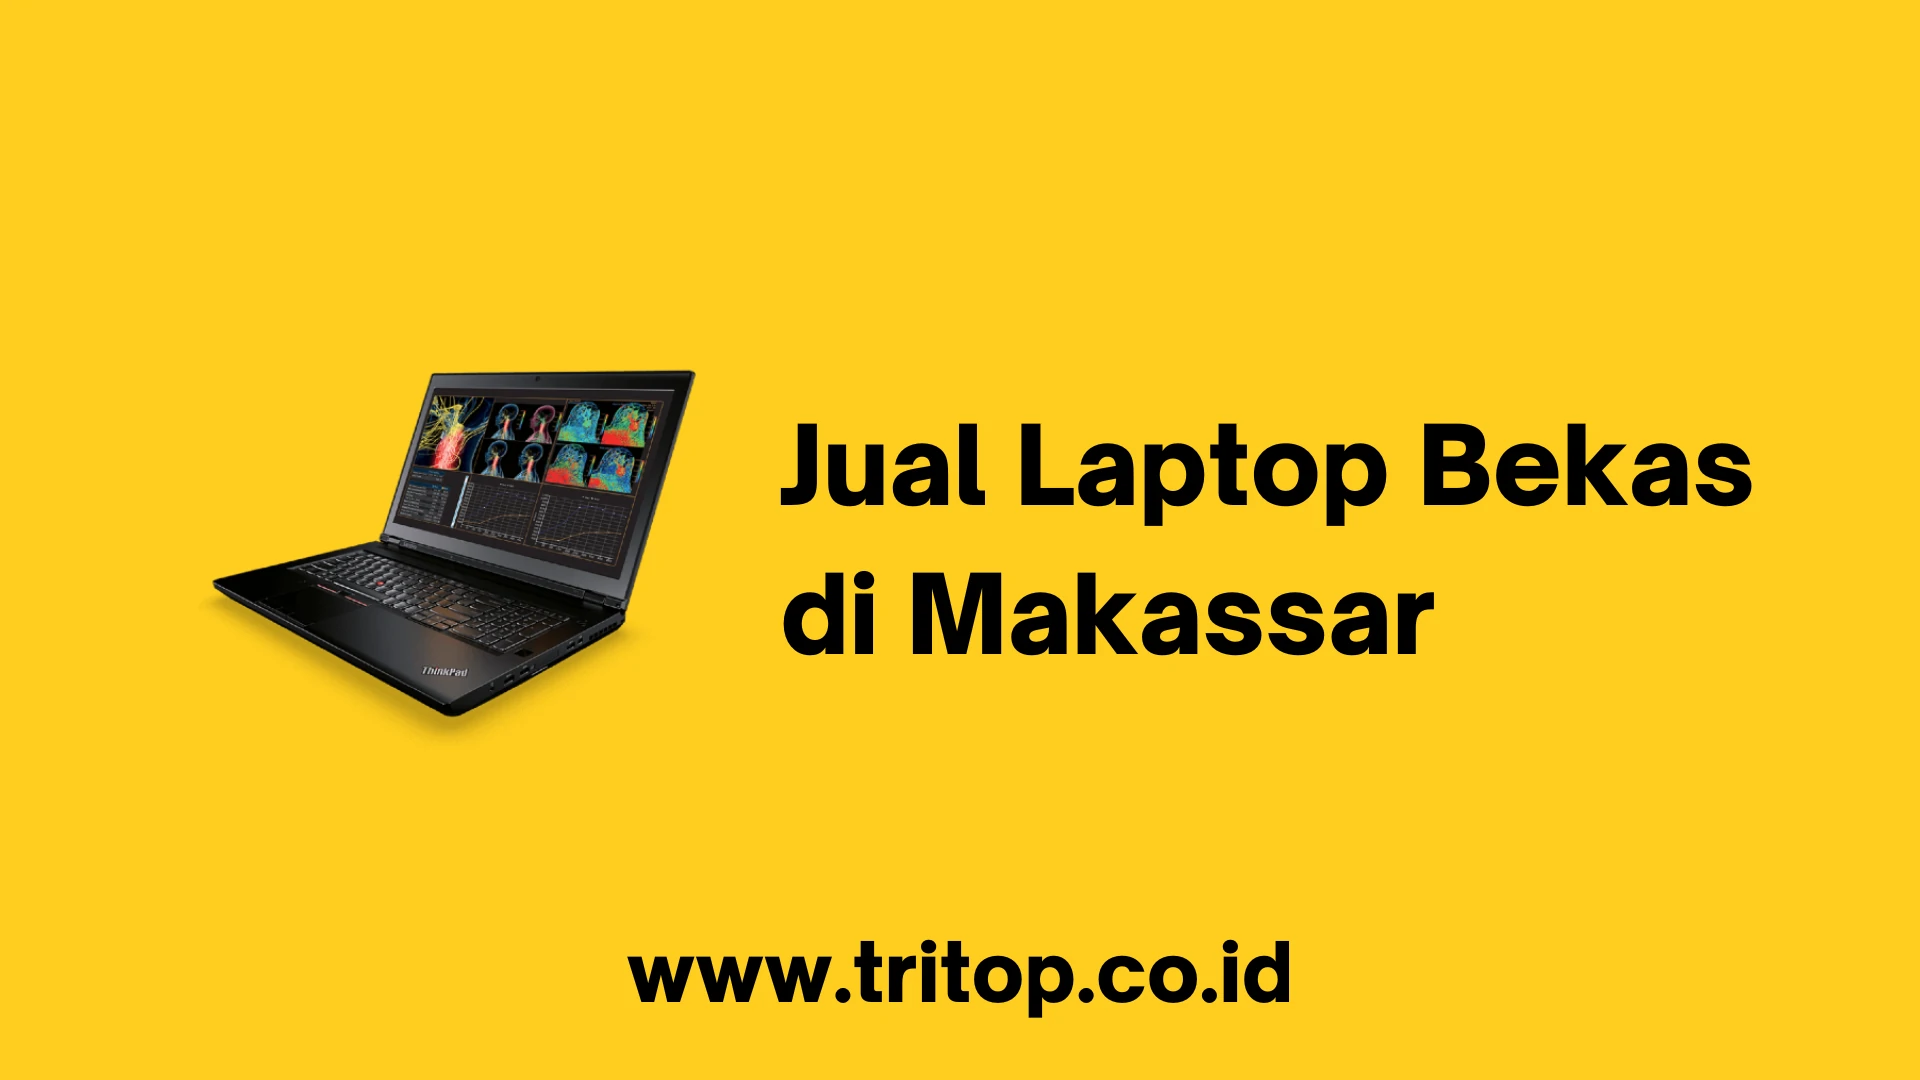 Jual Laptop Bekas di Makassar